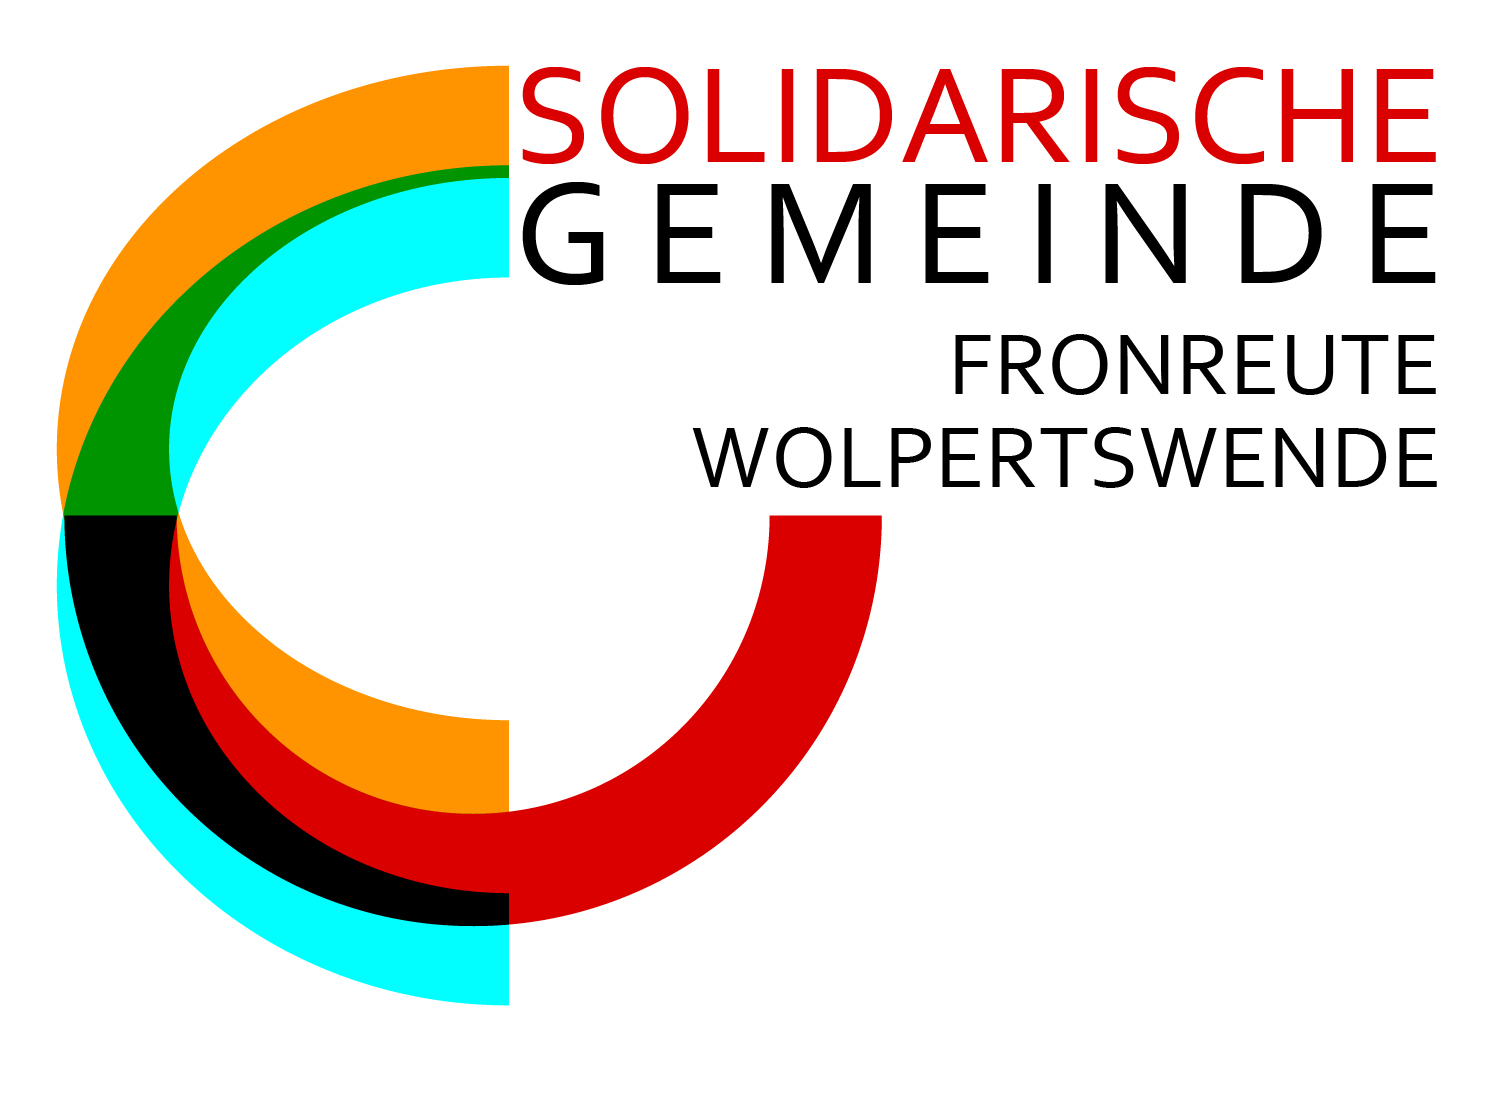 
    
            
                    Logo Solidarische Gemeinde
                
        
